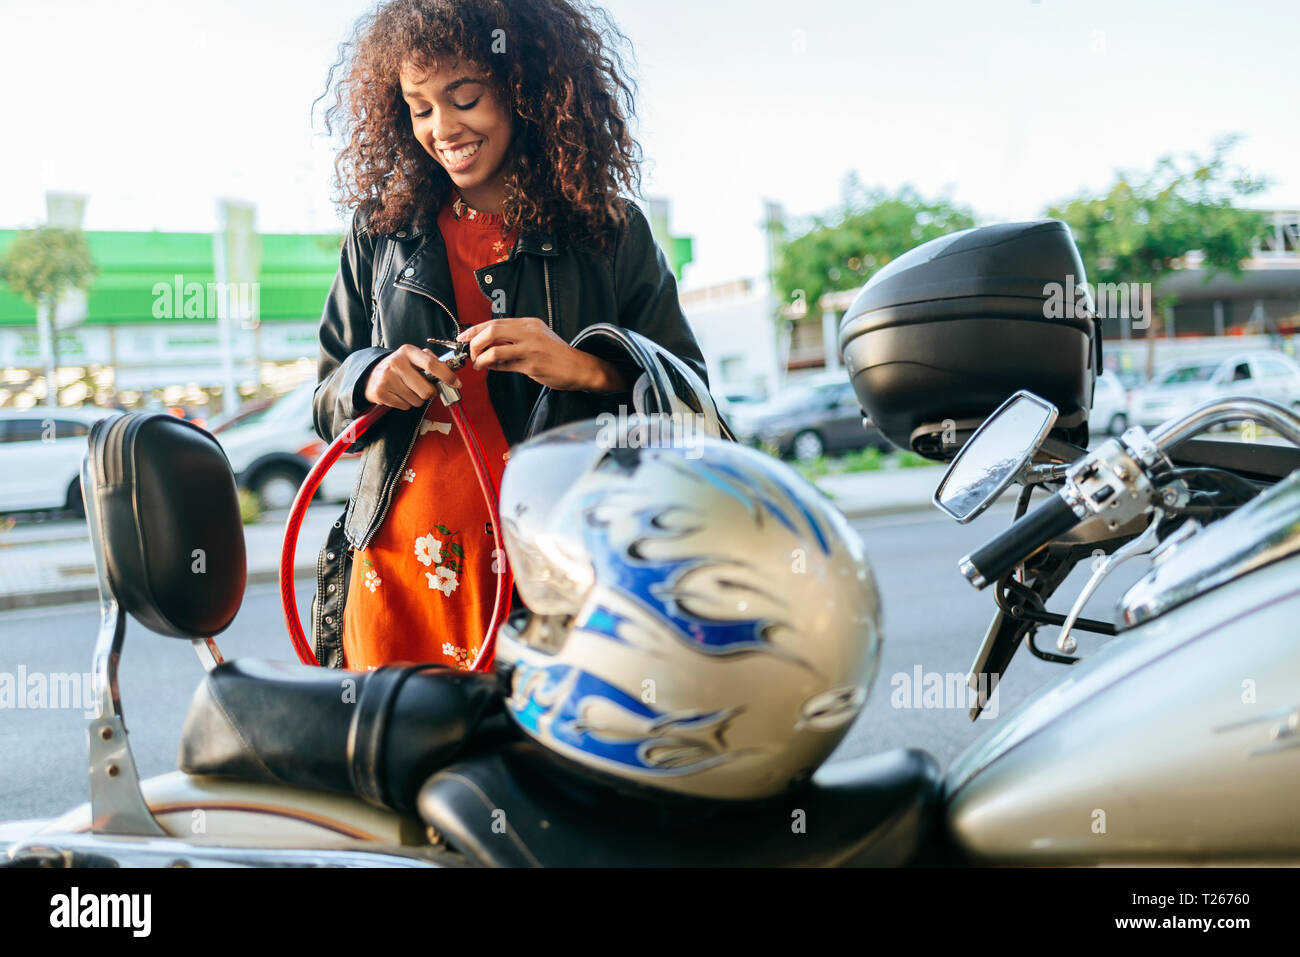 Mujer sonriente quitando el bloqueo de seguridad de su motocicleta Foto de stock